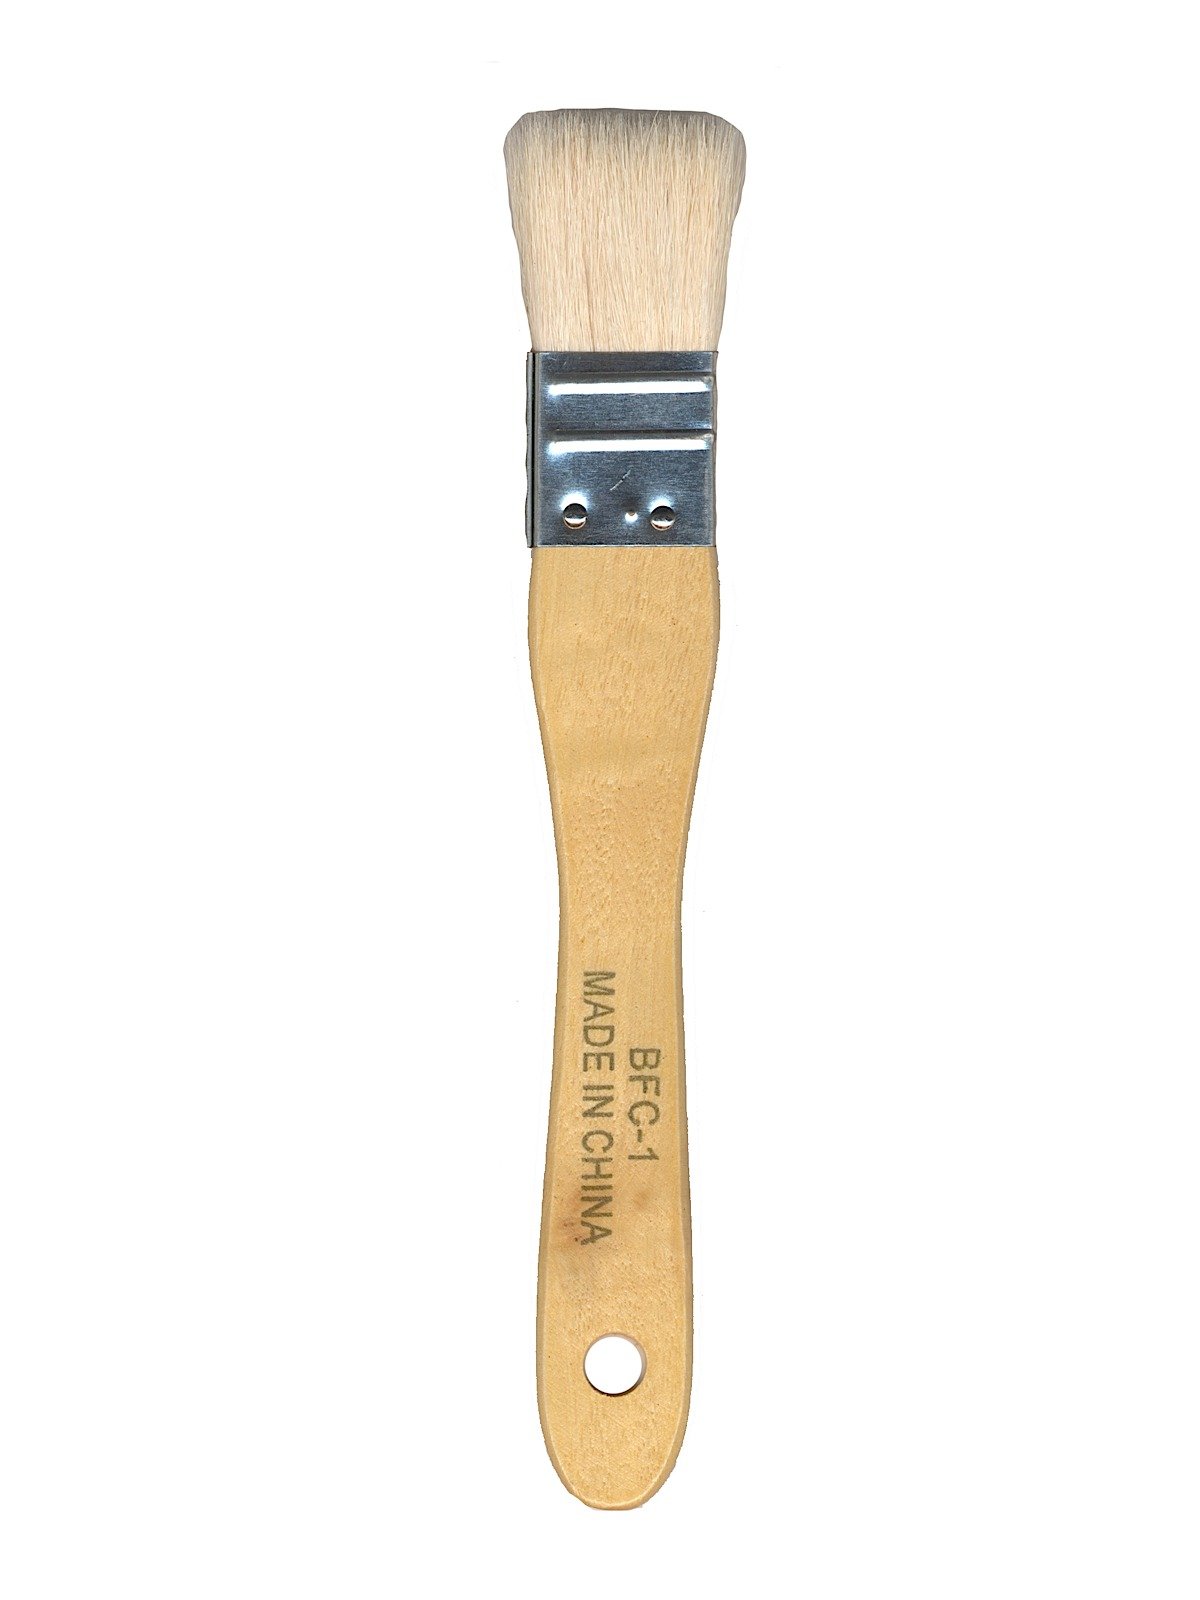 Yasutomo Flat Hake Brushes